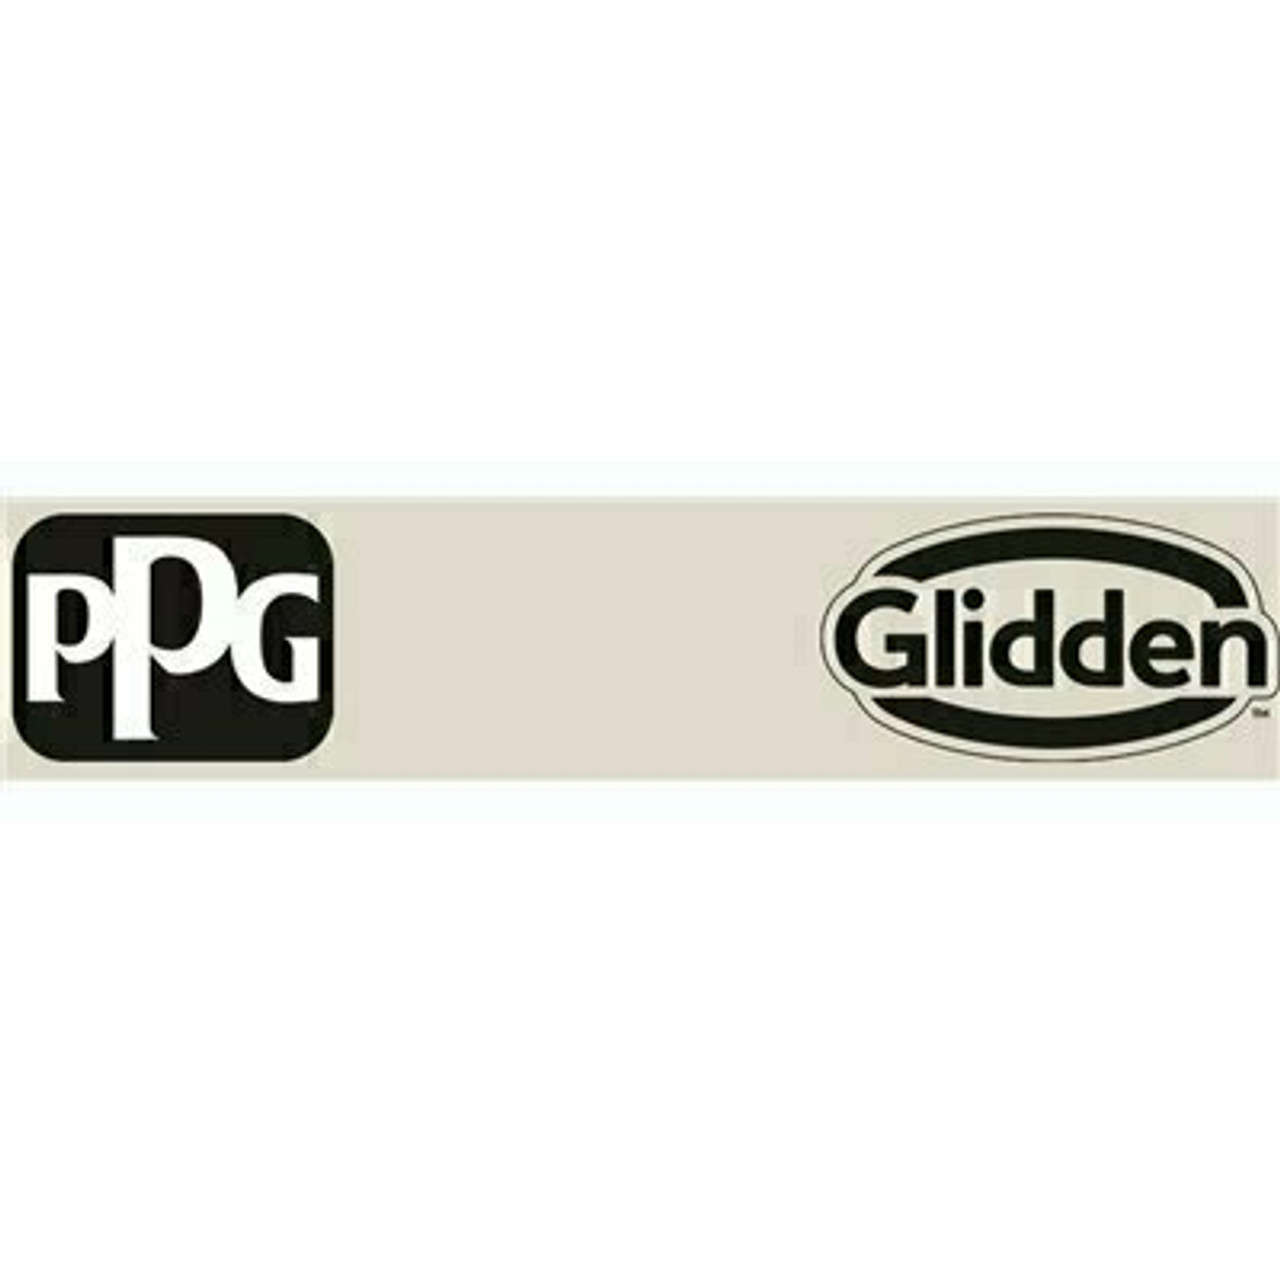 Glidden Essentials 1 Gal. #Ppg1025-2 Silent Smoke Semi-Gloss Interior Paint